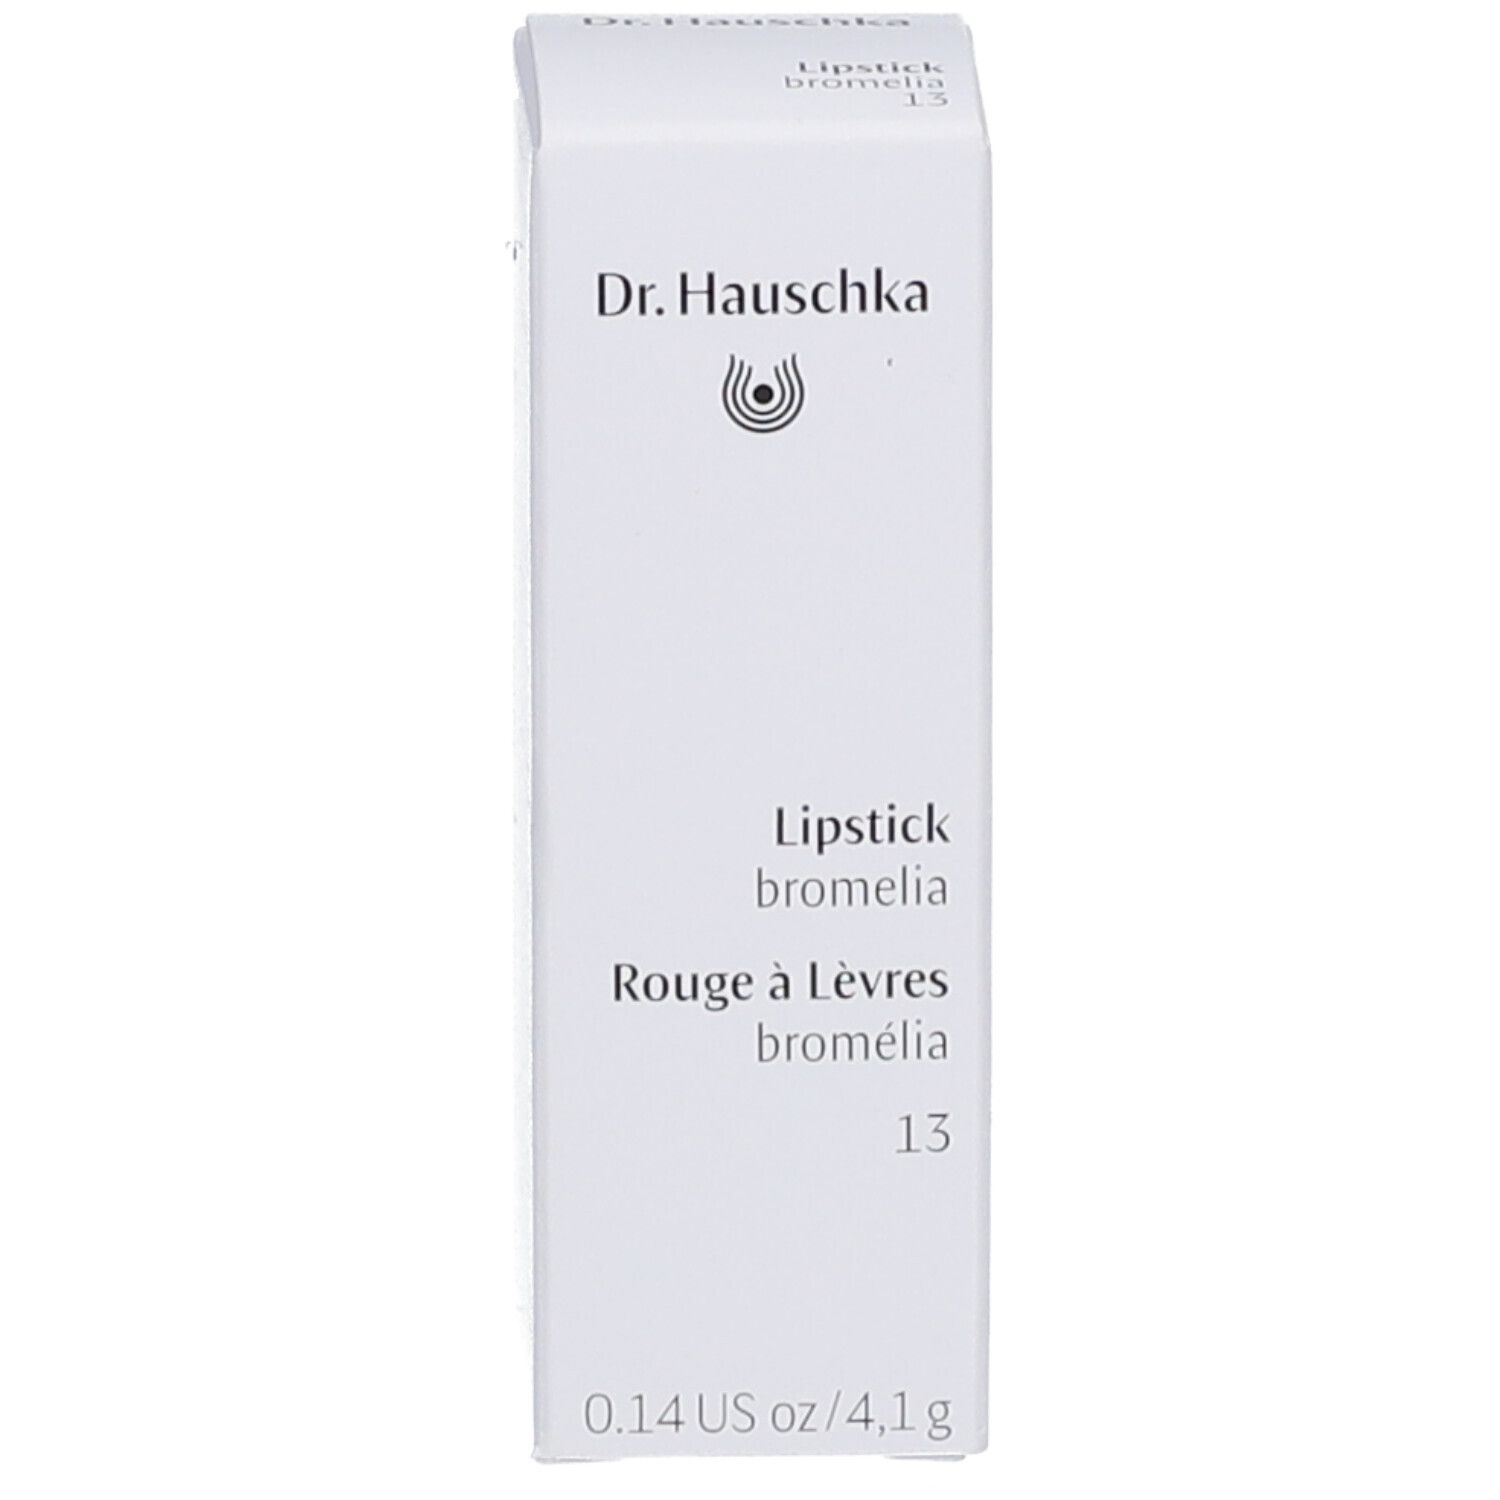 Dr. Hauschka Lipstick 13 bromelia 4,1g